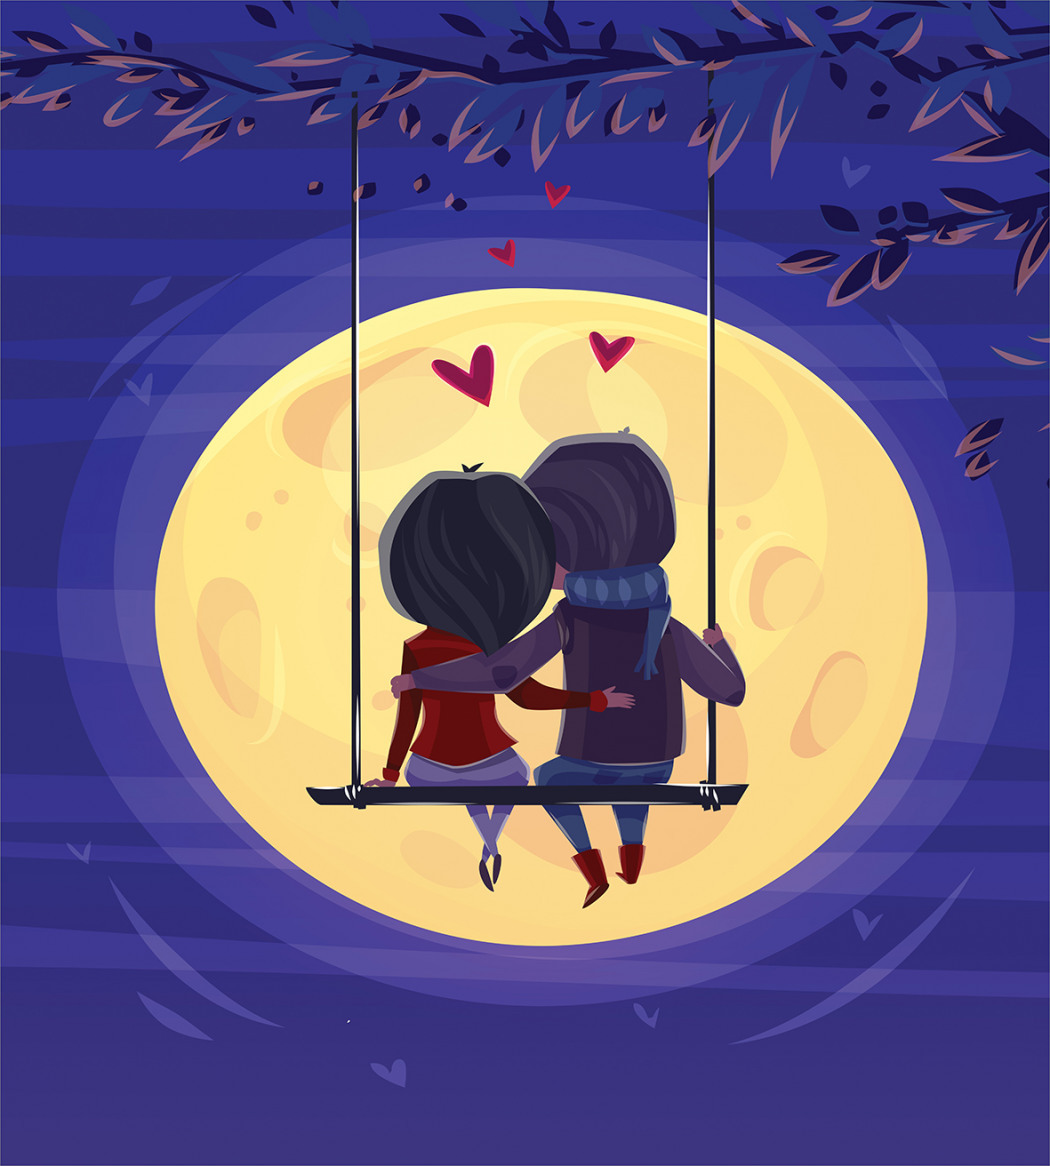 Мальчик и девочка под луной